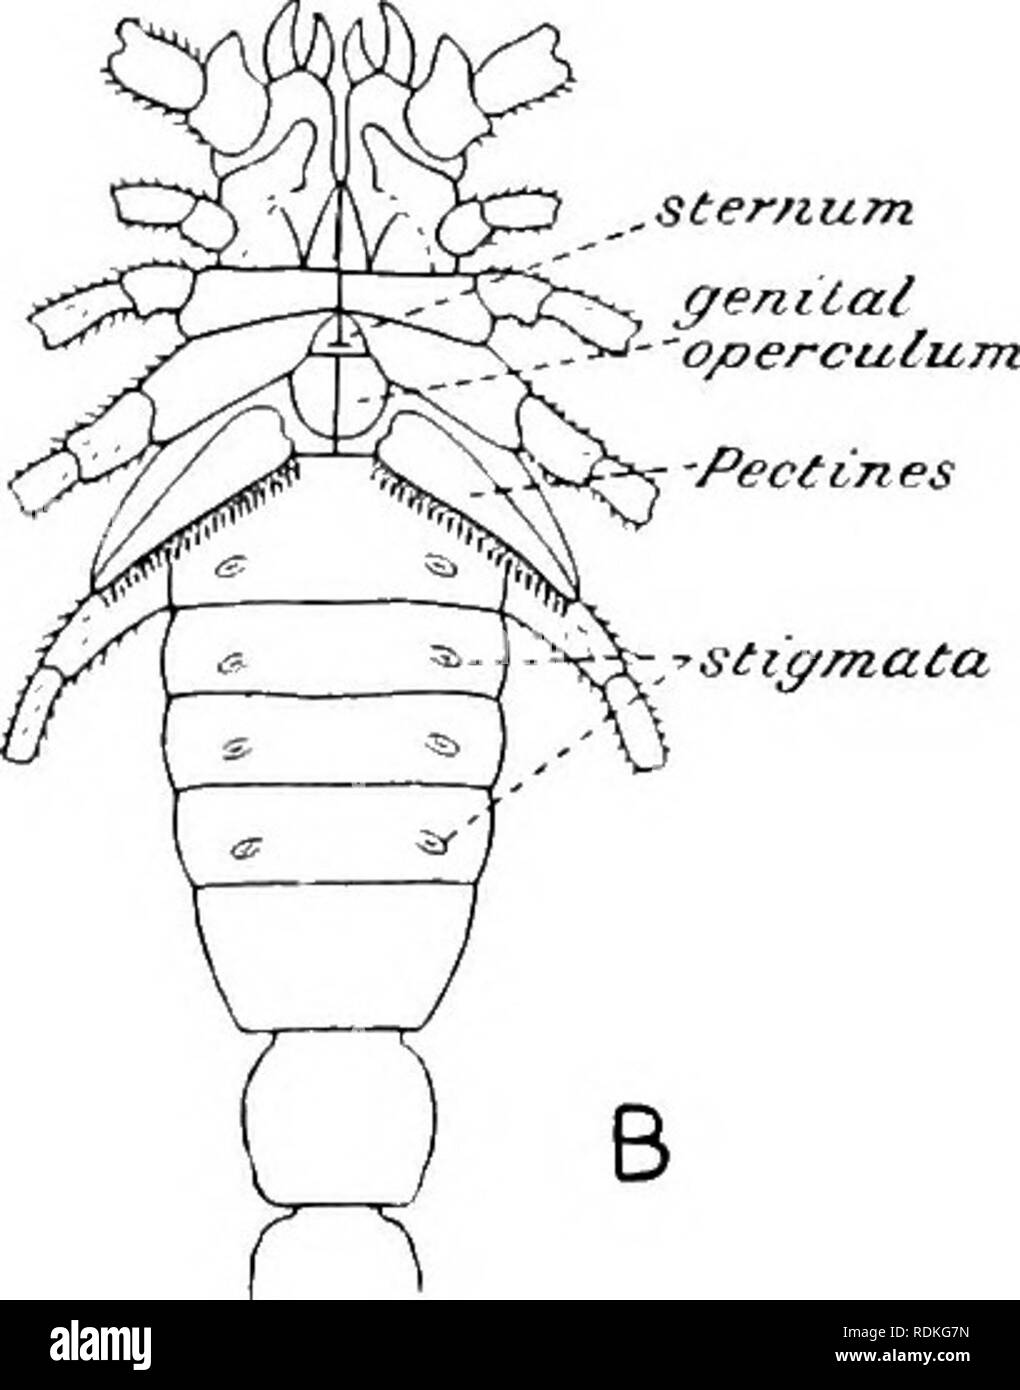 . Il Cambridge storia naturale. Zoologia. ,Ster/Lum. aculem-s. )/ 'Vesicle Fig. 169.-Buthus occitanus. Un, vista dorsale ; B, vista ventrale. (Dopo Kraepelin.) e talvolta appena uno dei principali opercolo, è un dello sterno, mai grande e visibile. La sua forma e dimensioni .costituiscono le caratteristiche della famiglia. Mesosoma.-La dorsale di piastre o terga sono distinte e sono collegati da chitina morbido con le loro corrispondenti sterna. Al di sotto della seconda segmenti addominali sono a carico "pectine*' o il pettine - come organi. Nella loro struttura quattro porzioni sono distinguibili, una lamella anteriore albero o allega- Foto Stock